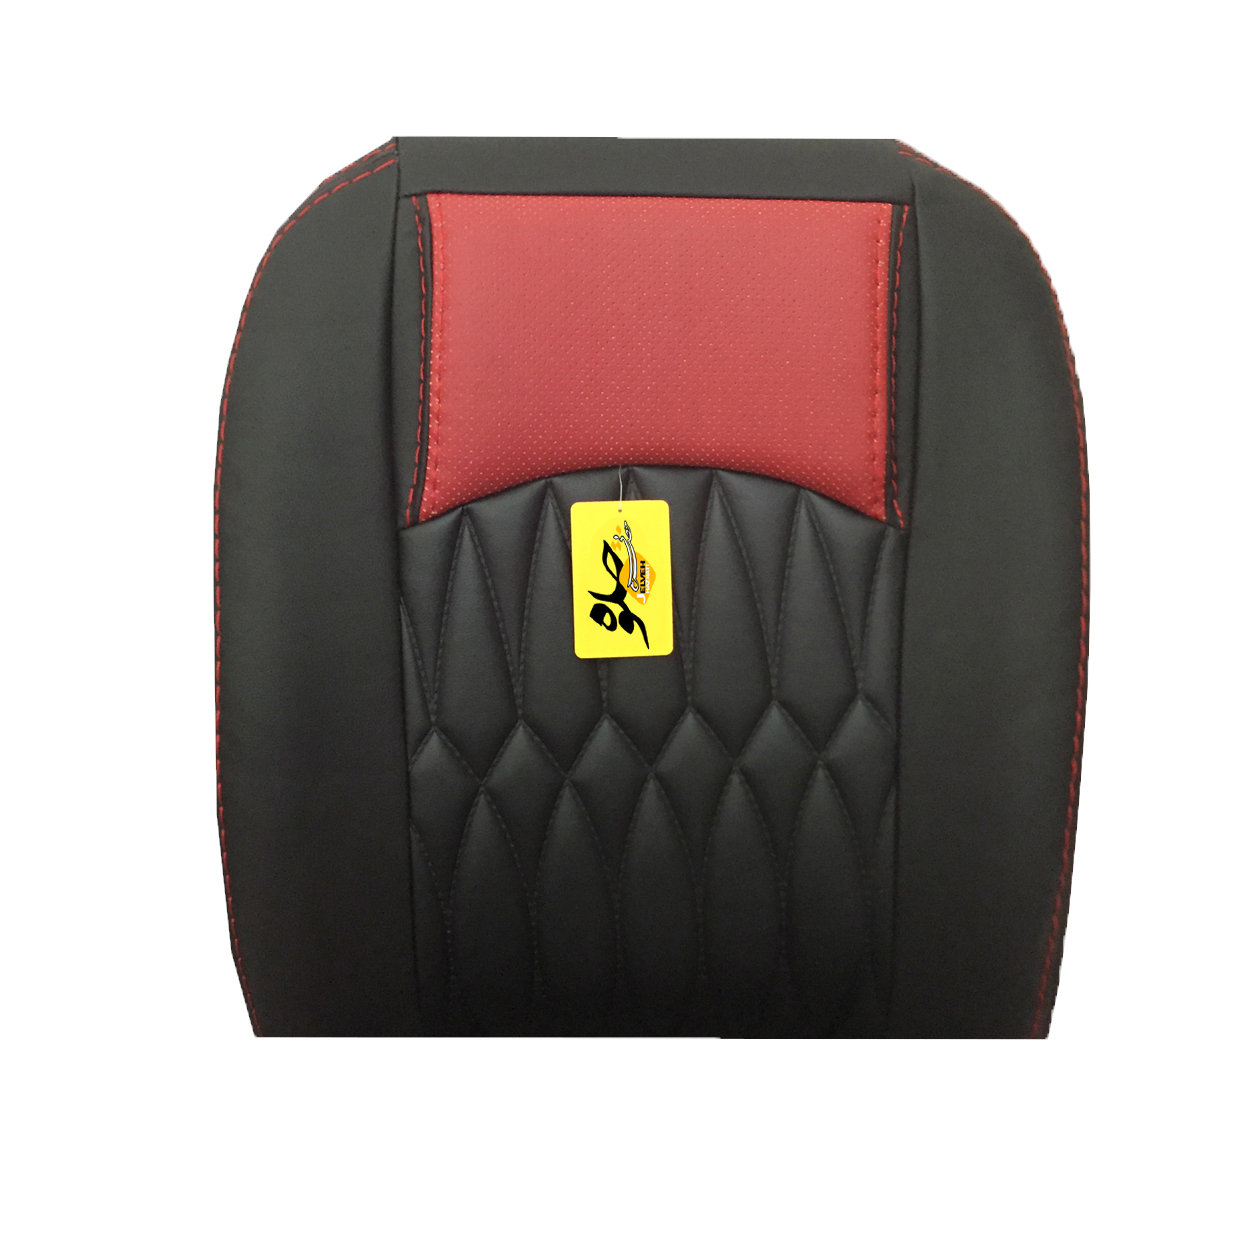 روکش صندلی خودرو جلوه مدل pr20614 مناسب برای رانا